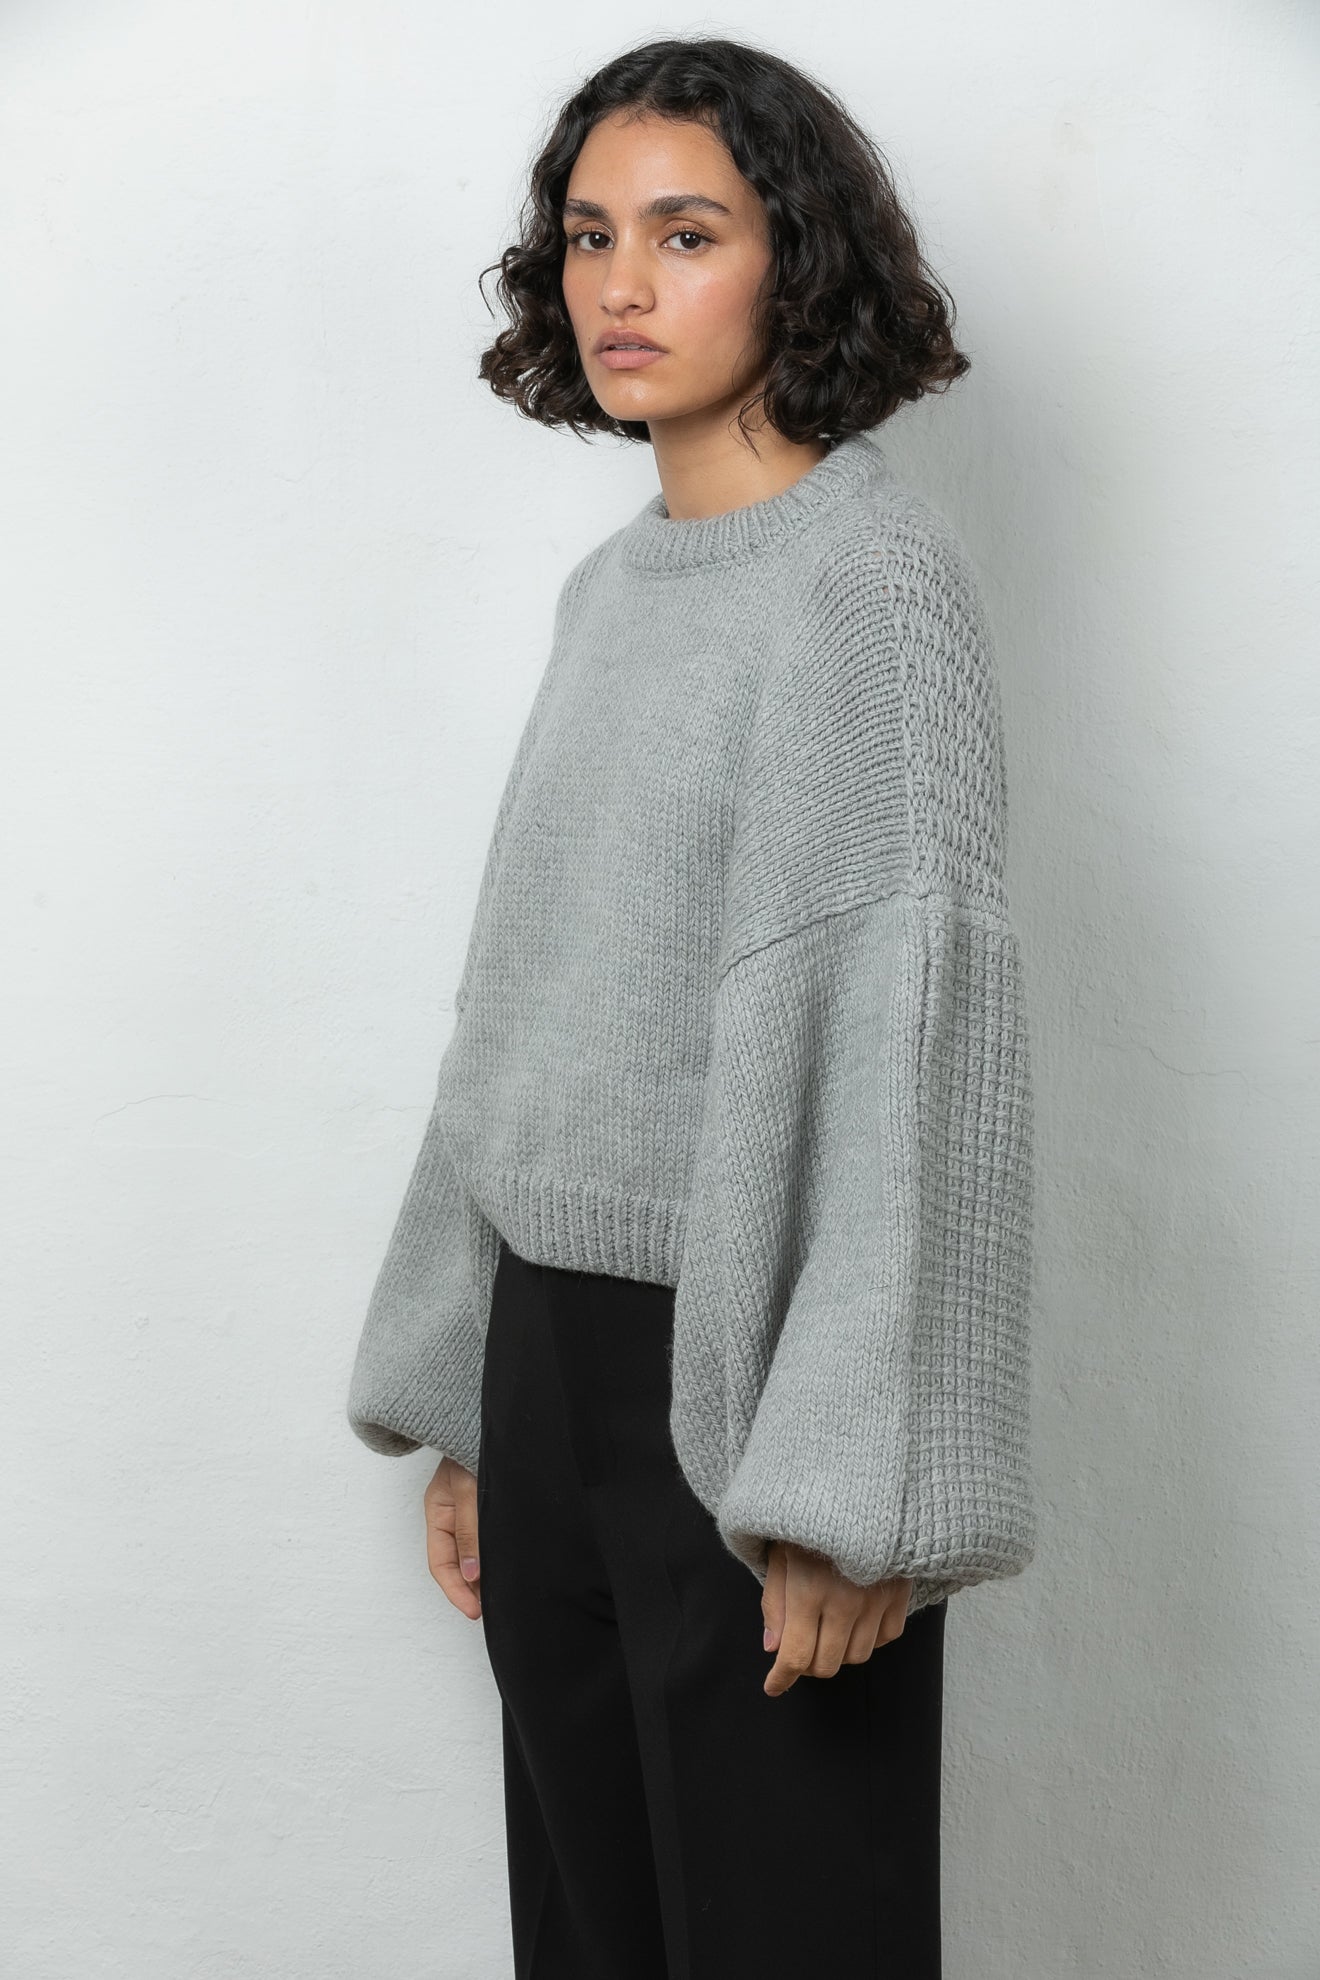 wool jumper sweater knit Mr Mittens winter grey